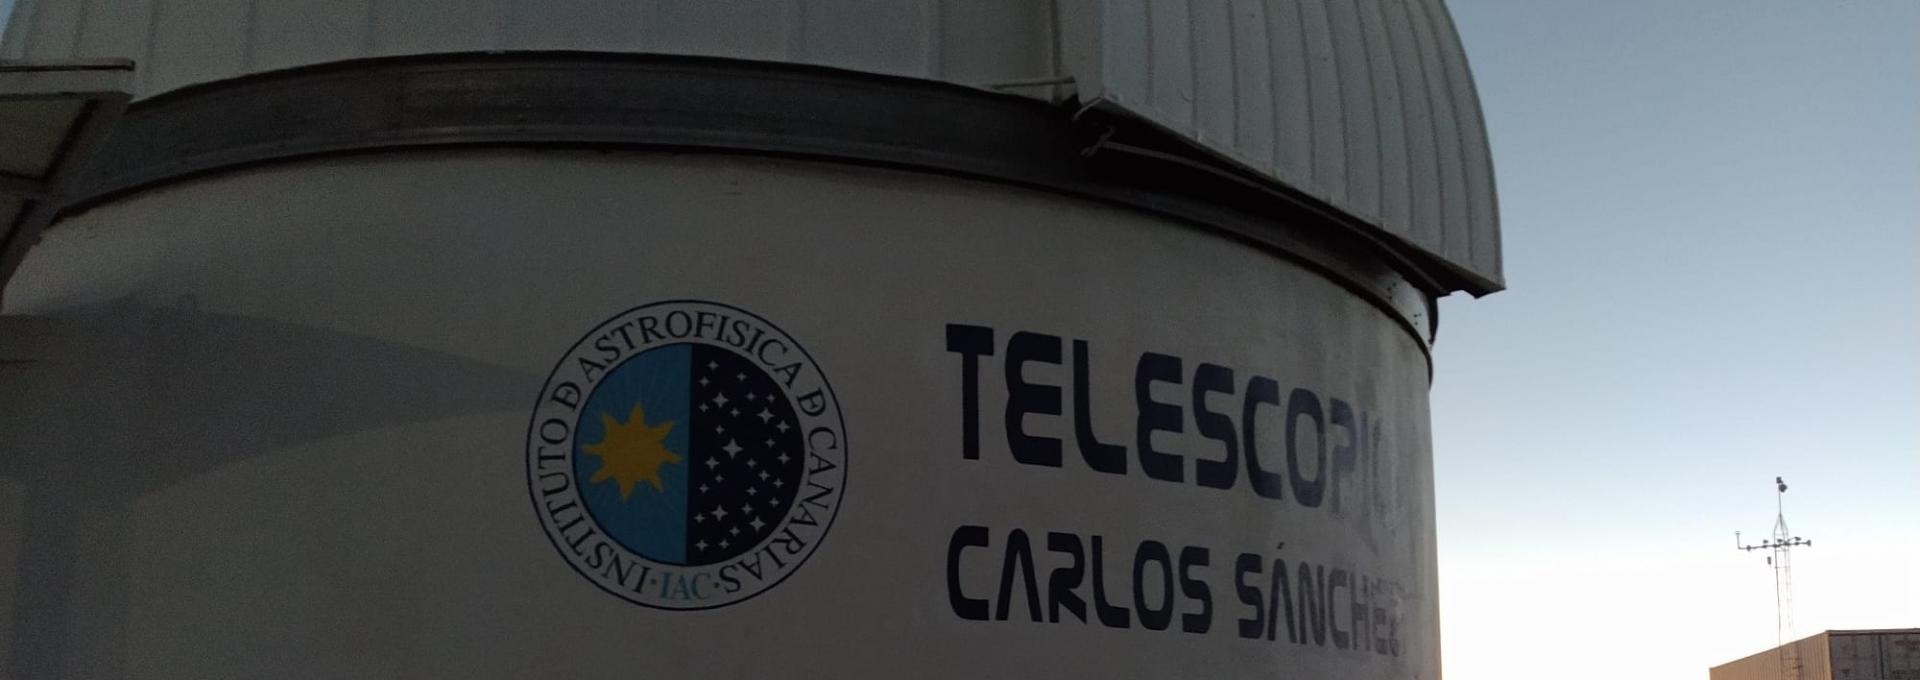 Telescopio Carlos Sánchez